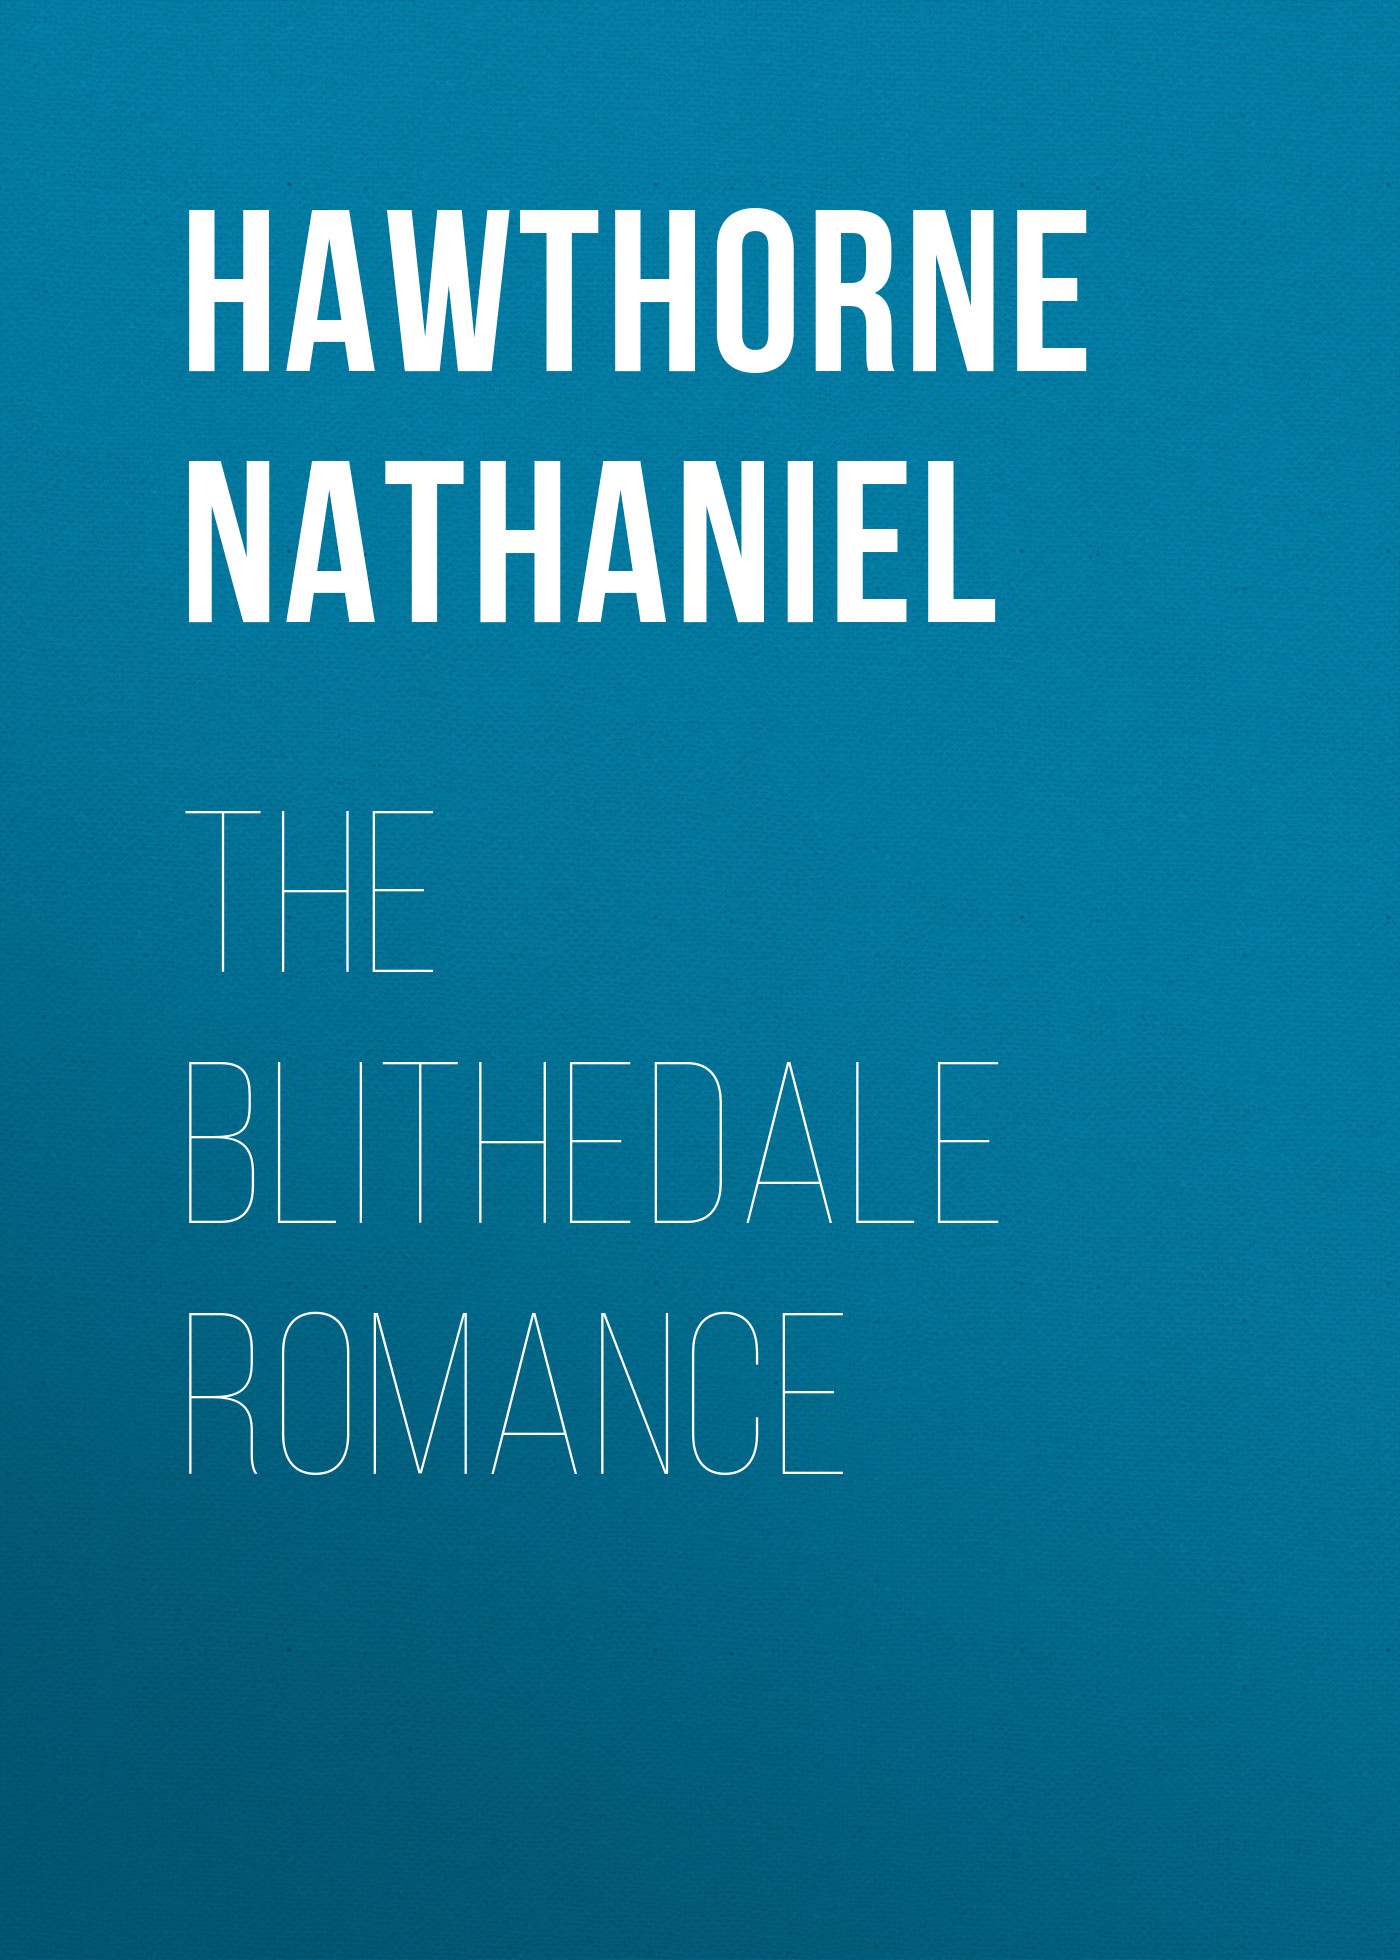 Книга The Blithedale Romance из серии , созданная Nathaniel Hawthorne, может относится к жанру Литература 19 века, Зарубежная старинная литература, Зарубежная классика. Стоимость электронной книги The Blithedale Romance с идентификатором 25560132 составляет 0 руб.